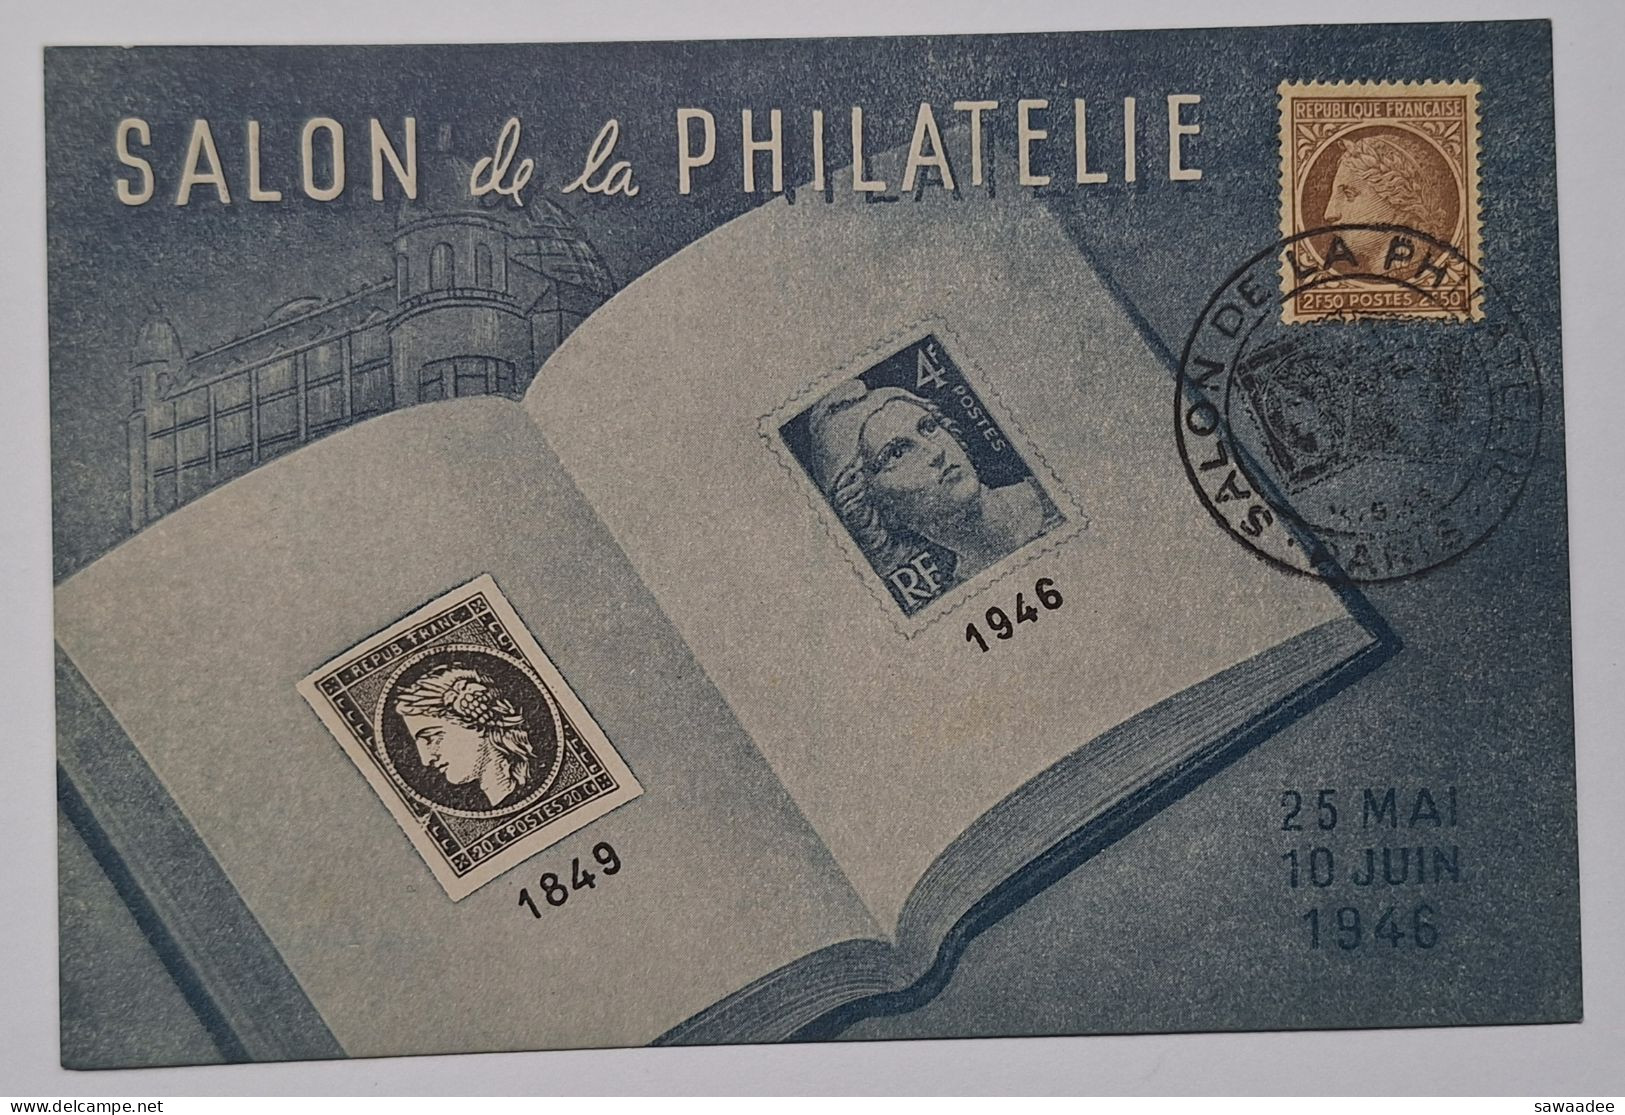 CARTE POSTALE FRANCE - SALON DE LA PHILATELIE - 1849/1946 - 25 MAI Au 10 JUIN 1946 - Postal Services